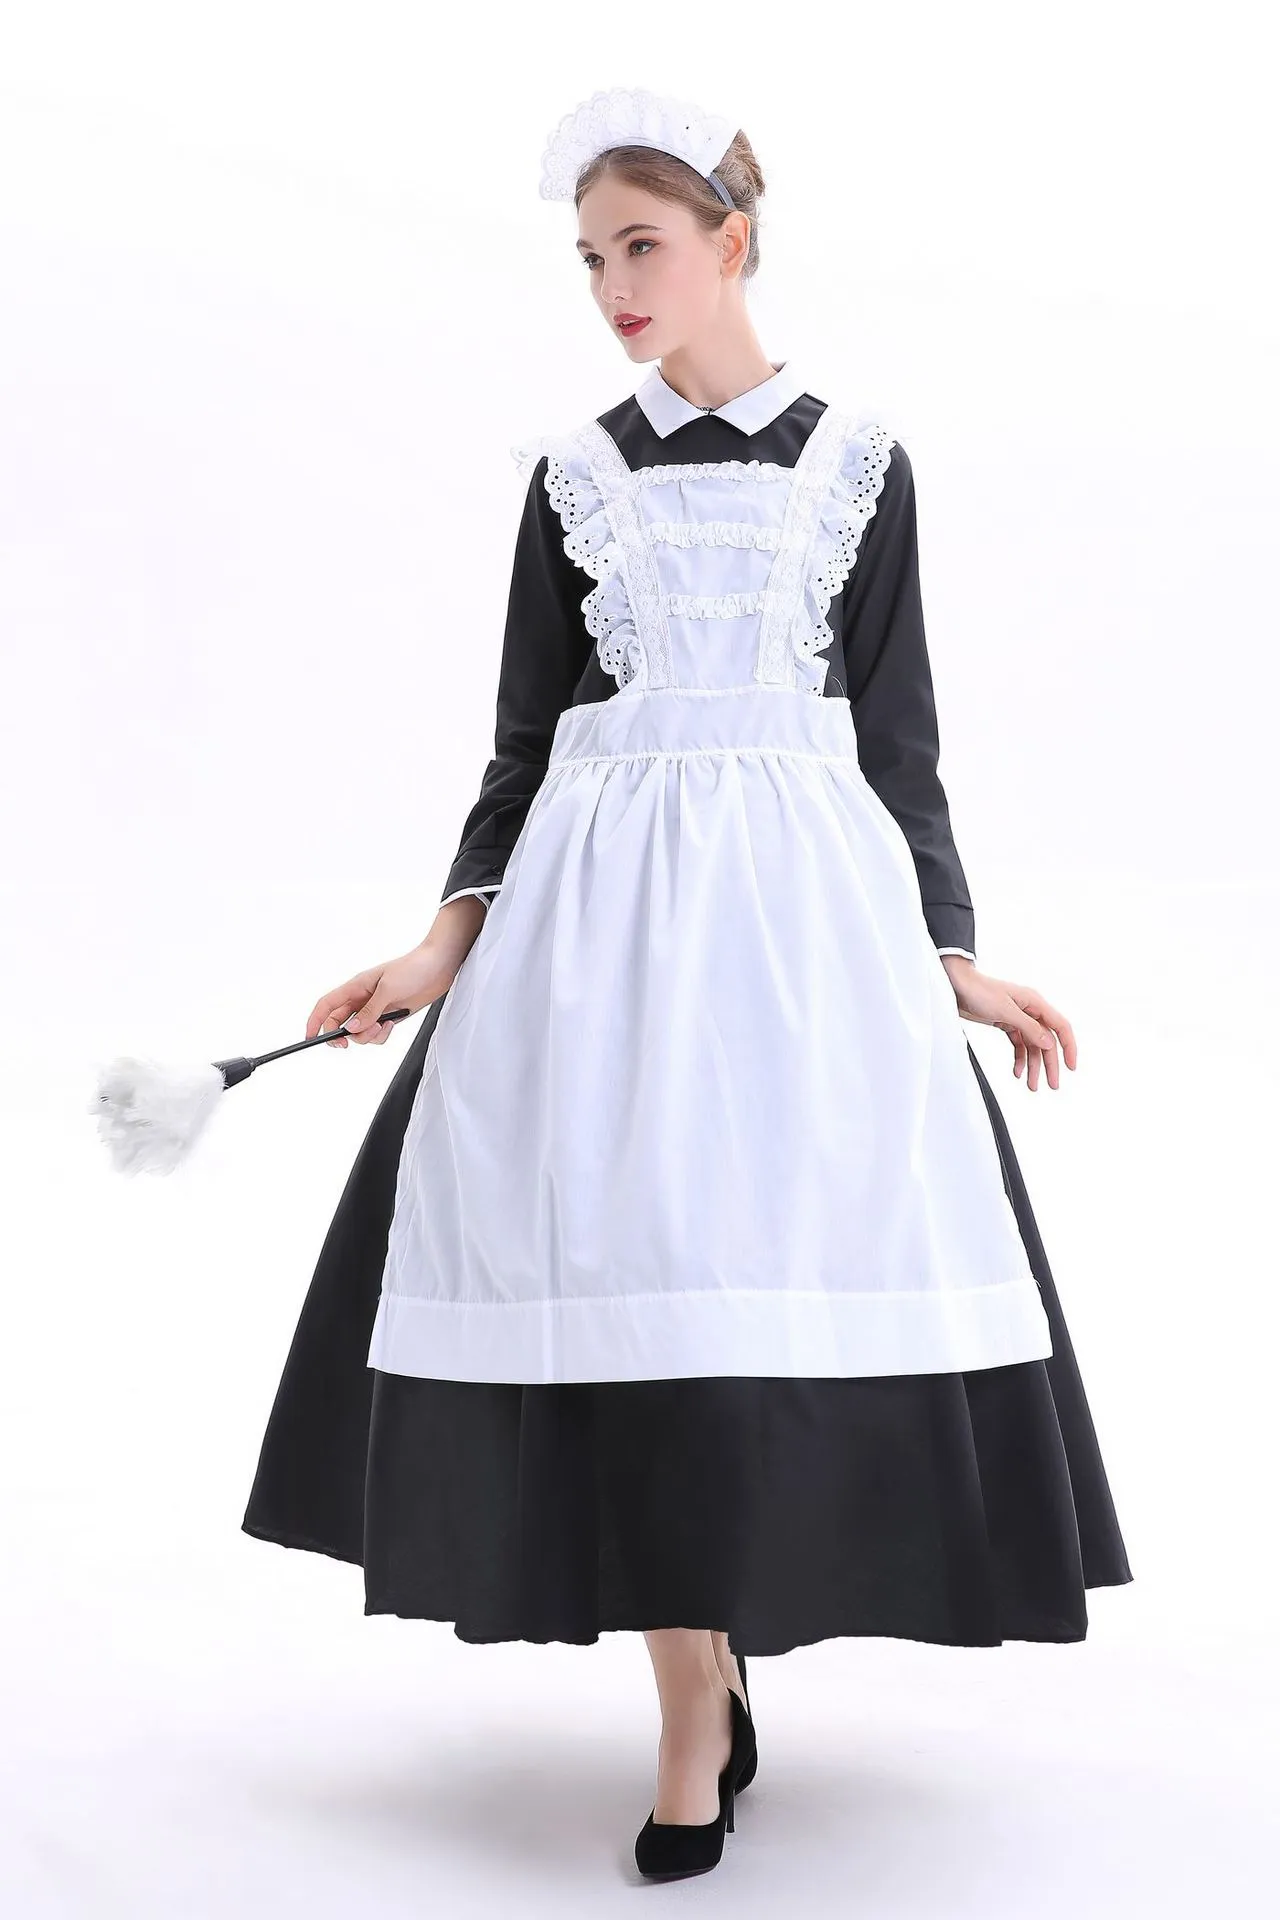 cosplay Franse landhuis meid kostuum roljurk Volwassen Victoriaanse meid arme boer dienaar Fancy Dress Franse Wench Manor Maid Costume223J